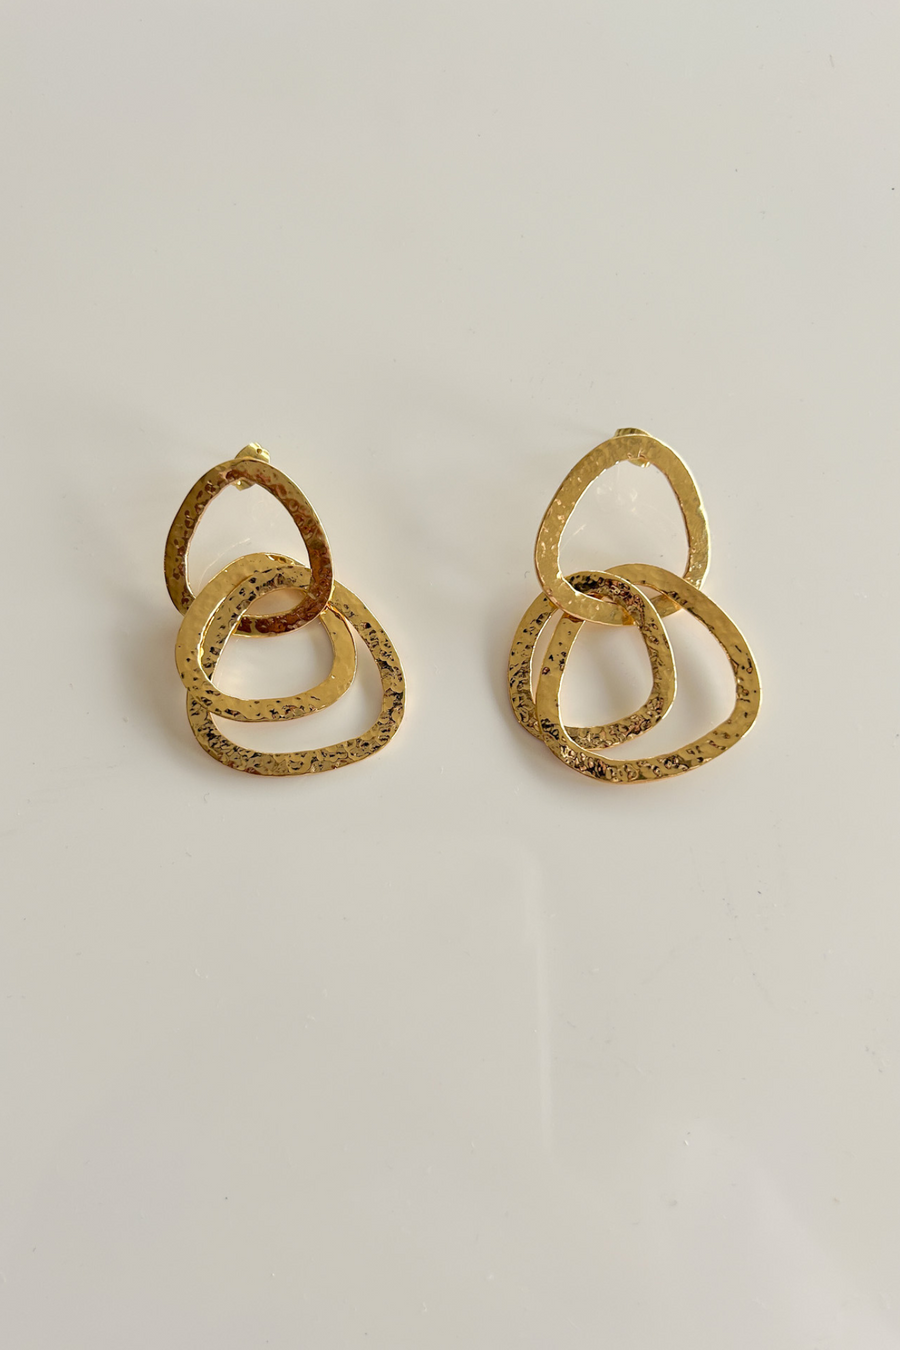 Hammered Triple Ring Earrings